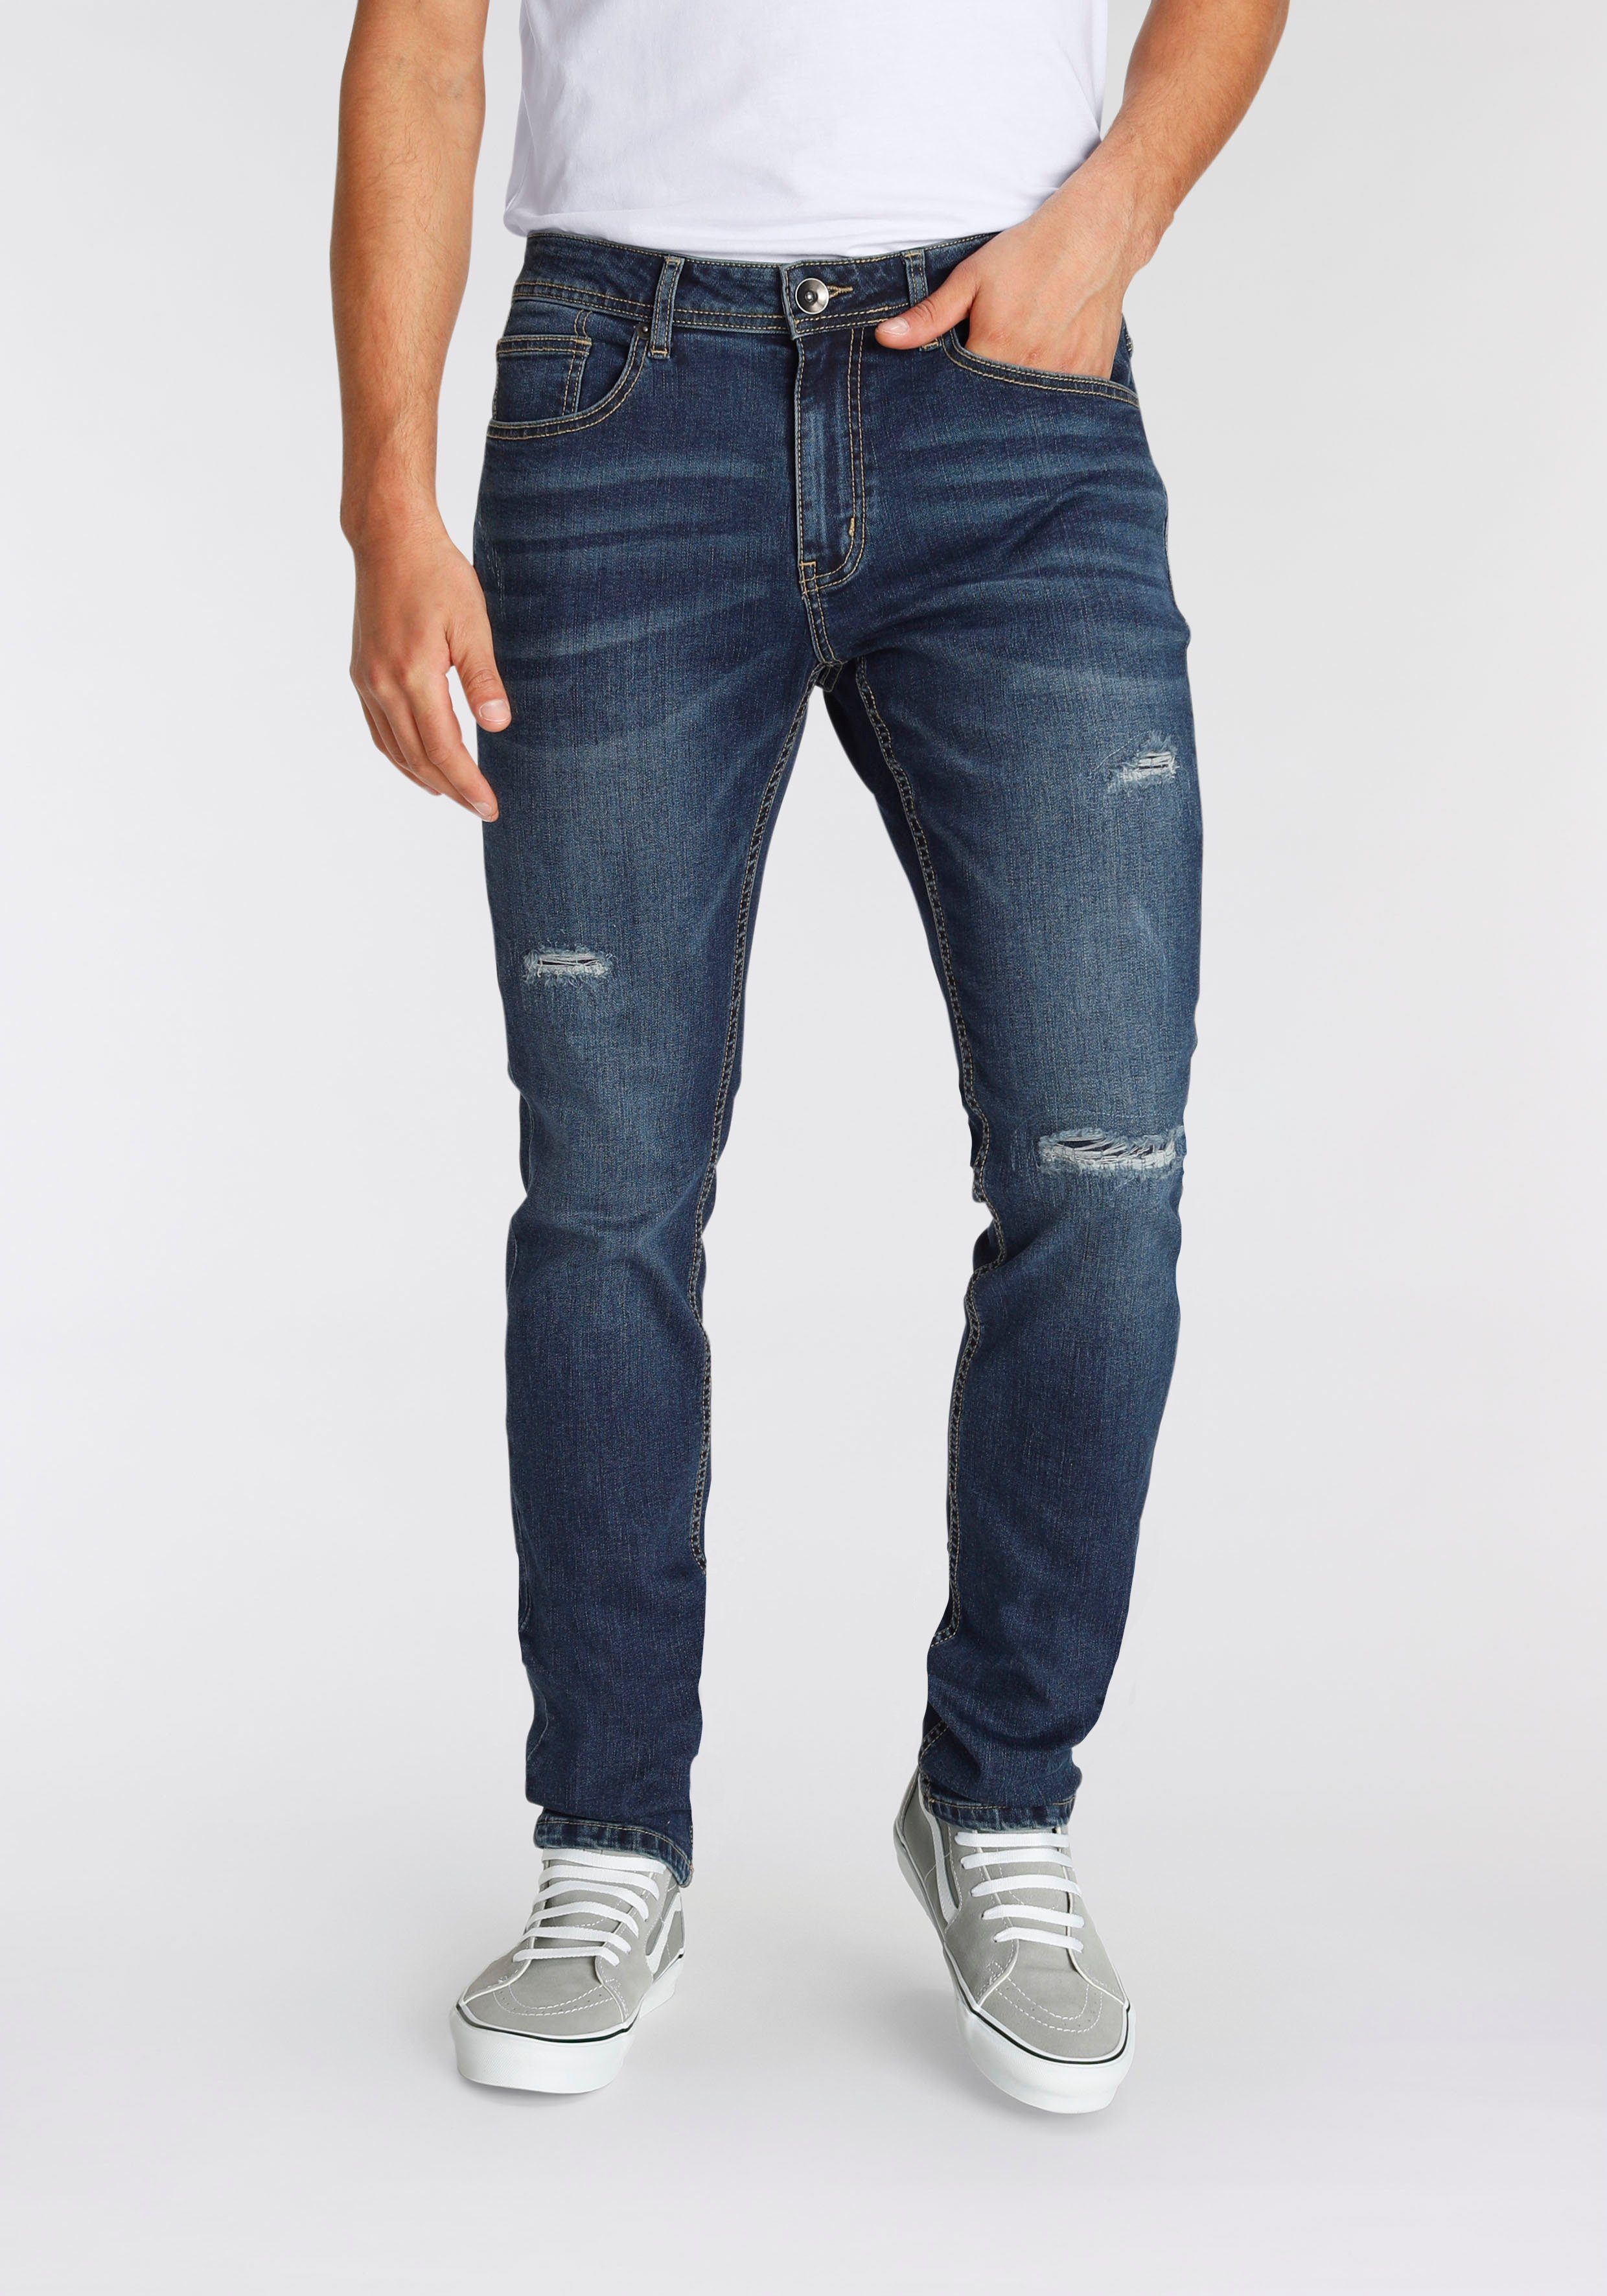 AJC Straight-Jeans mit Abriebeffekten an den Beinen dark blue